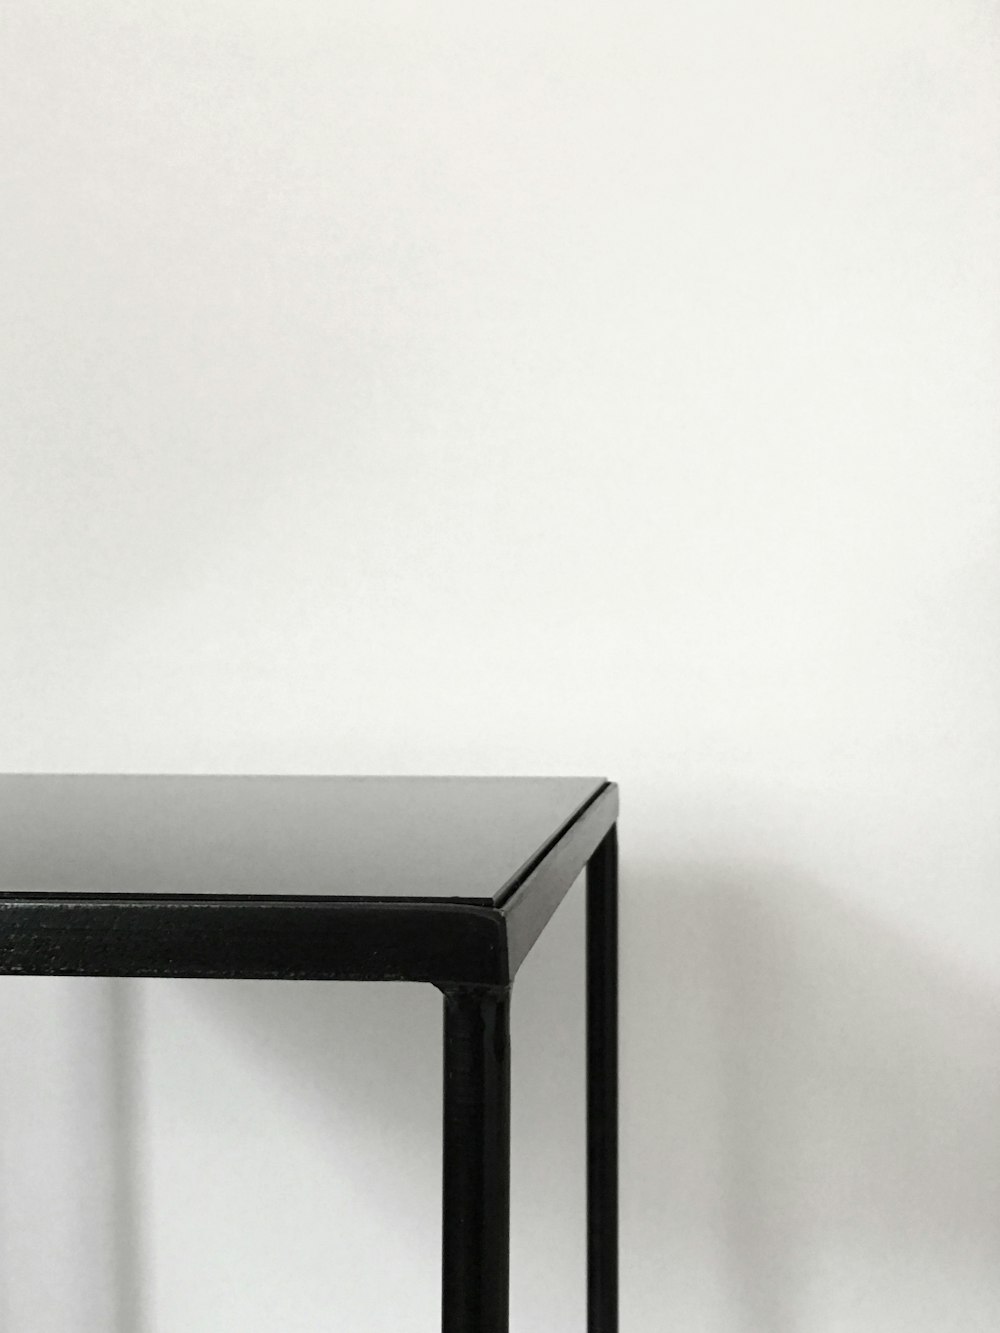 Table en métal noir près d’un mur haletant blanc